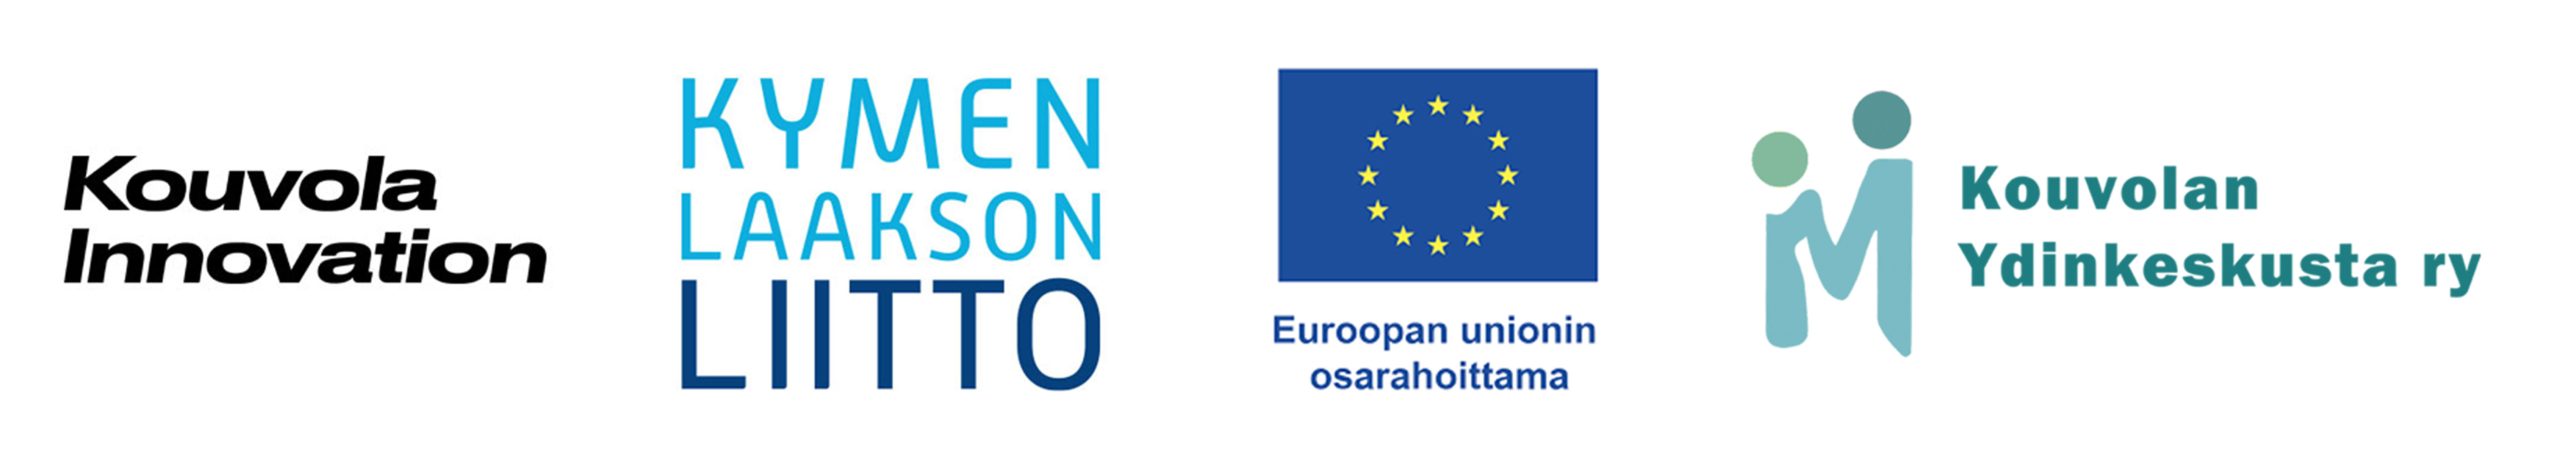 Tapahtuman rahoittajalogot: Euroopan unioni - Euroopan aluekehitysrahasto, Vipuvoimaa EU:kta 2014-2020, Kymenlaakson liitto ja Kouvola Innovation.